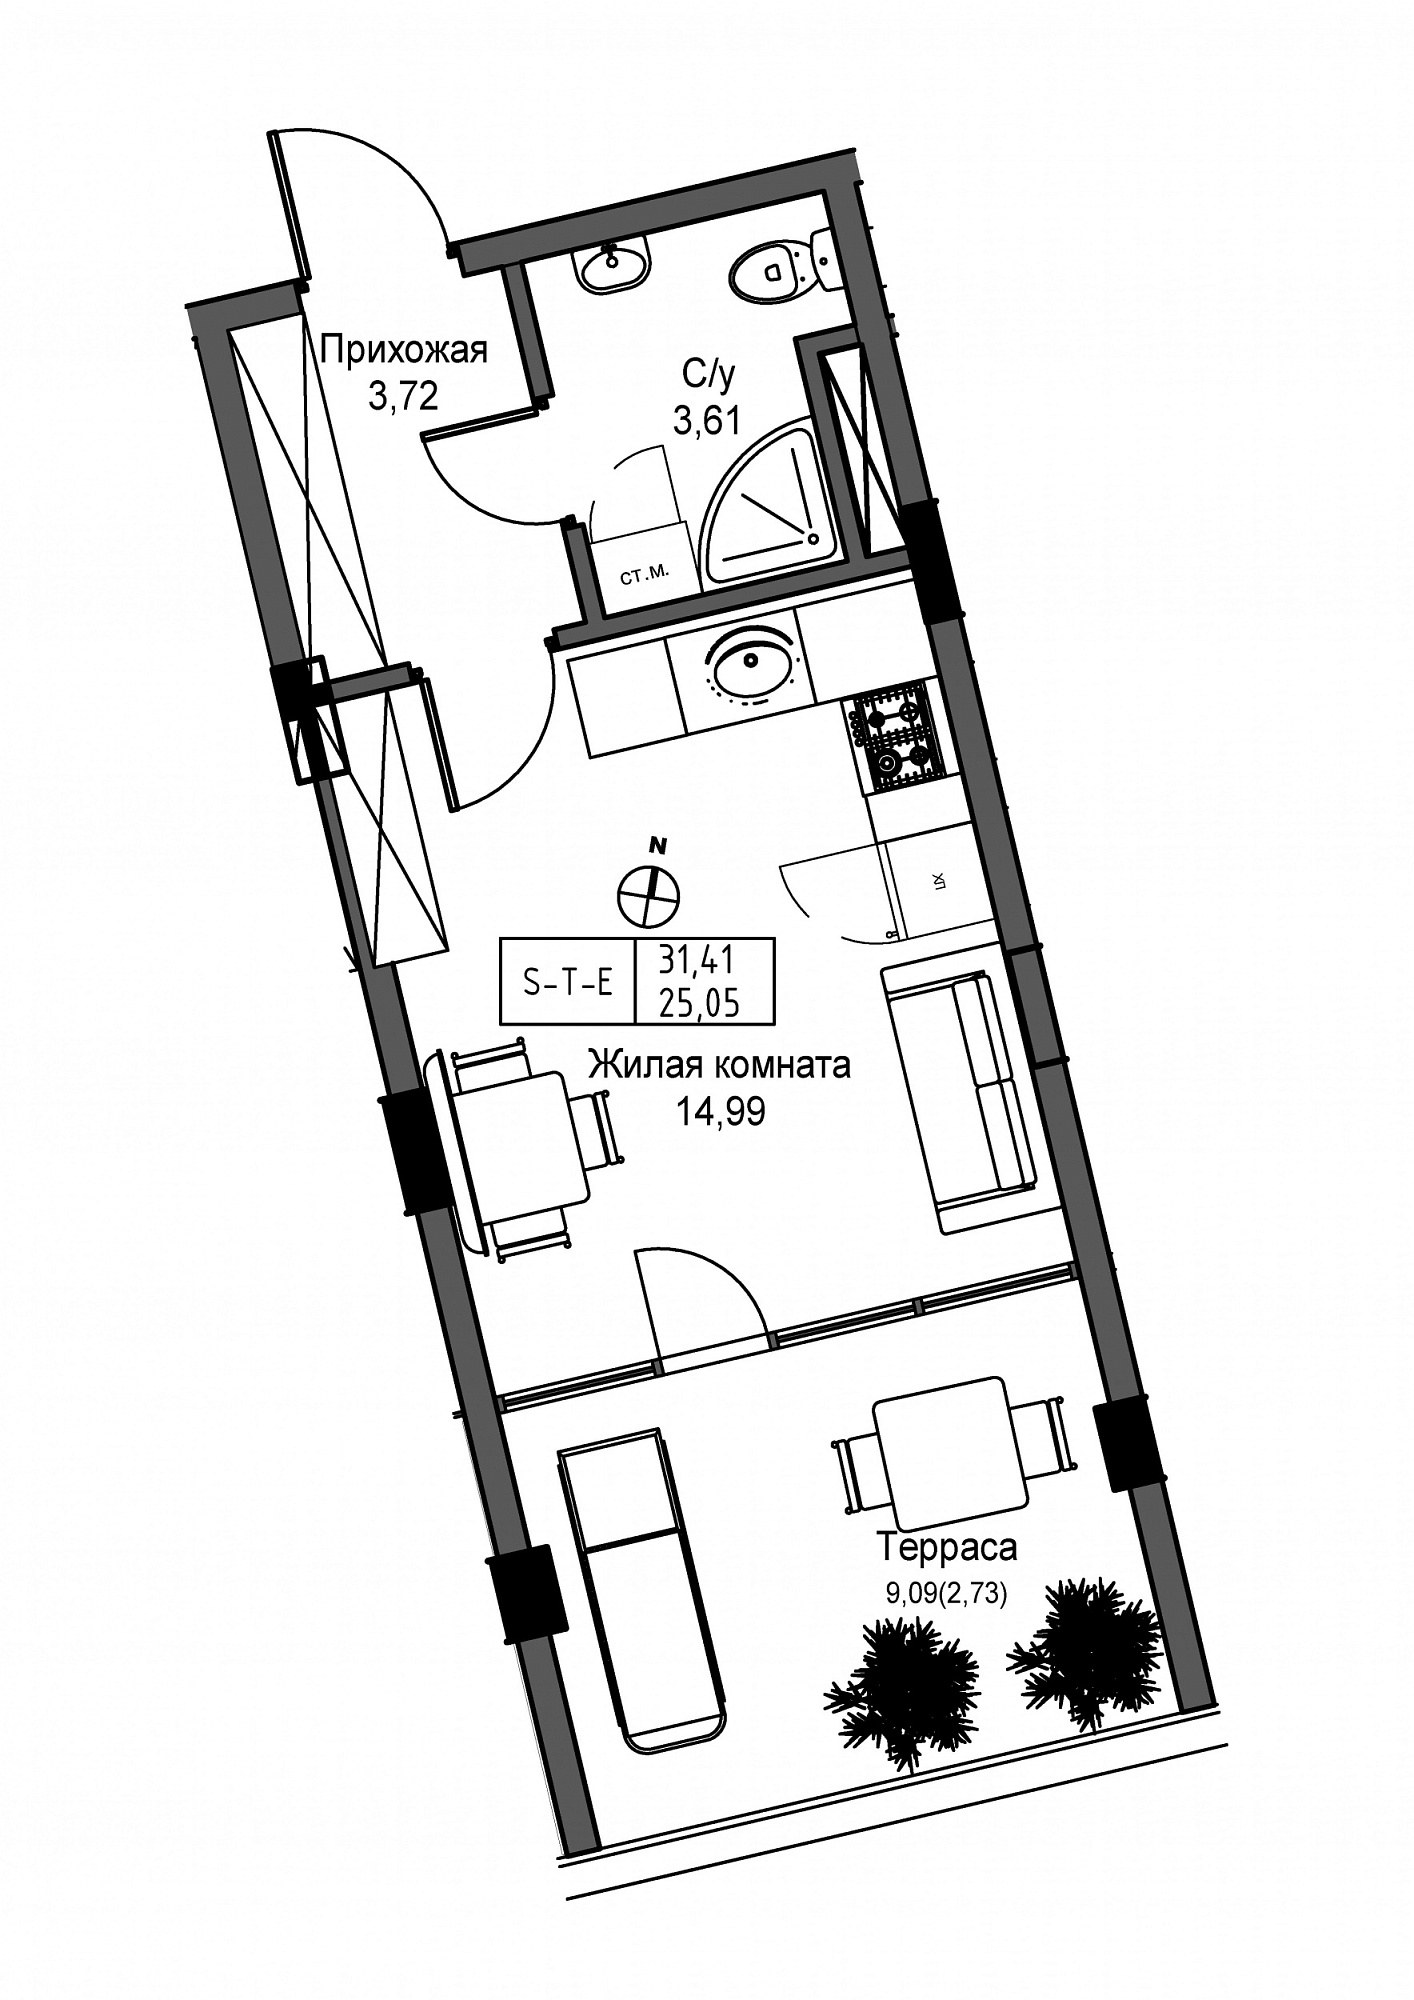 Планировка Smart-квартира площей 25.05м2, UM-004-03/0010.